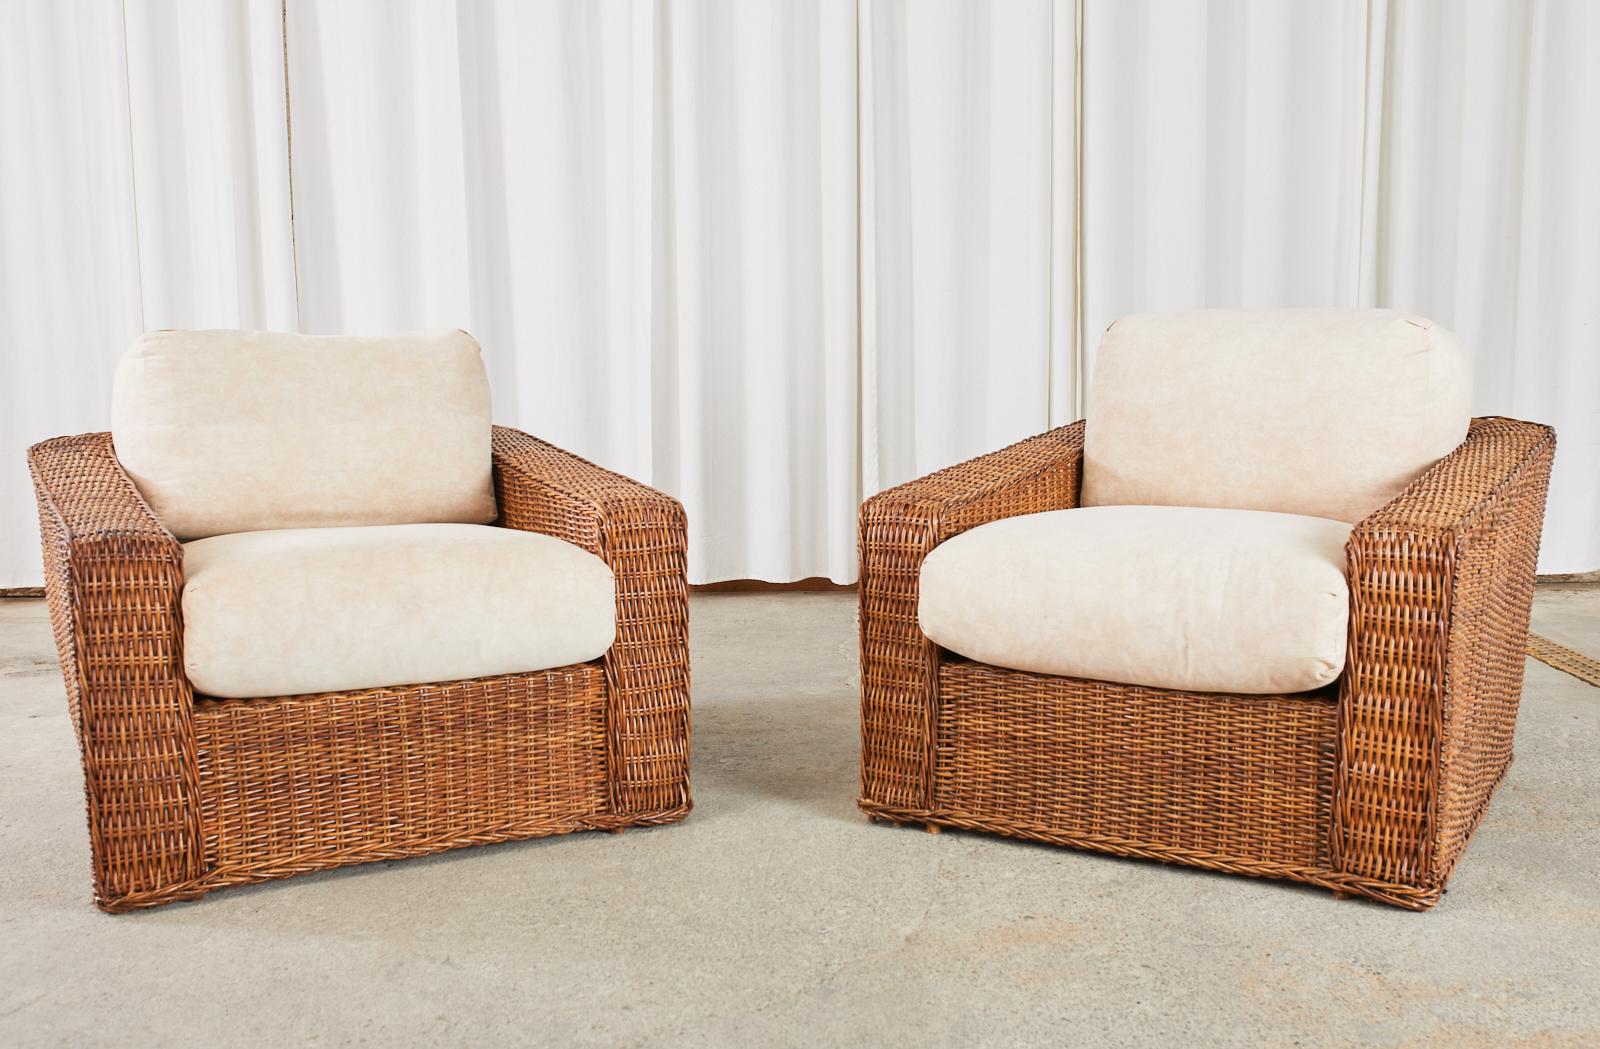 Grande paire de fauteuils de salon ou fauteuils club en rotin tressé surdimensionnés en forme de cube, fabriqués dans le fabuleux style moderne et organique de Michael Taylor. Les chaises présentent un grand cadre en bambou et en bois recouvert de